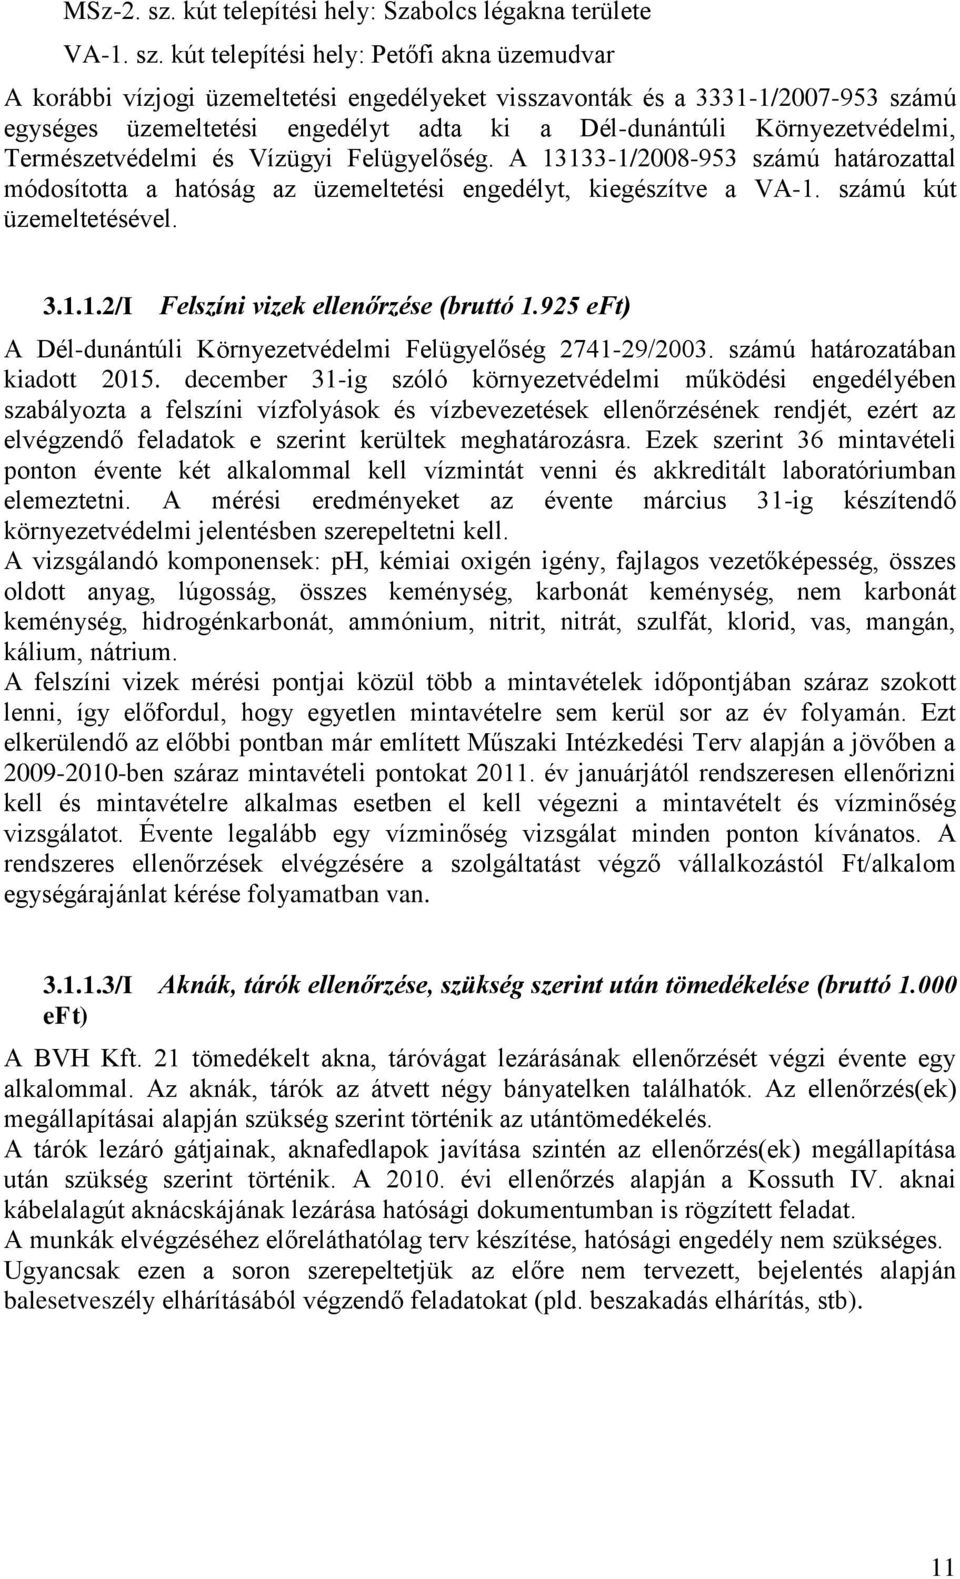 kút telepítési hely: Petőfi akna üzemudvar A korábbi vízjogi üzemeltetési engedélyeket visszavonták és a 3331-1/2007-953 számú egységes üzemeltetési engedélyt adta ki a Dél-dunántúli